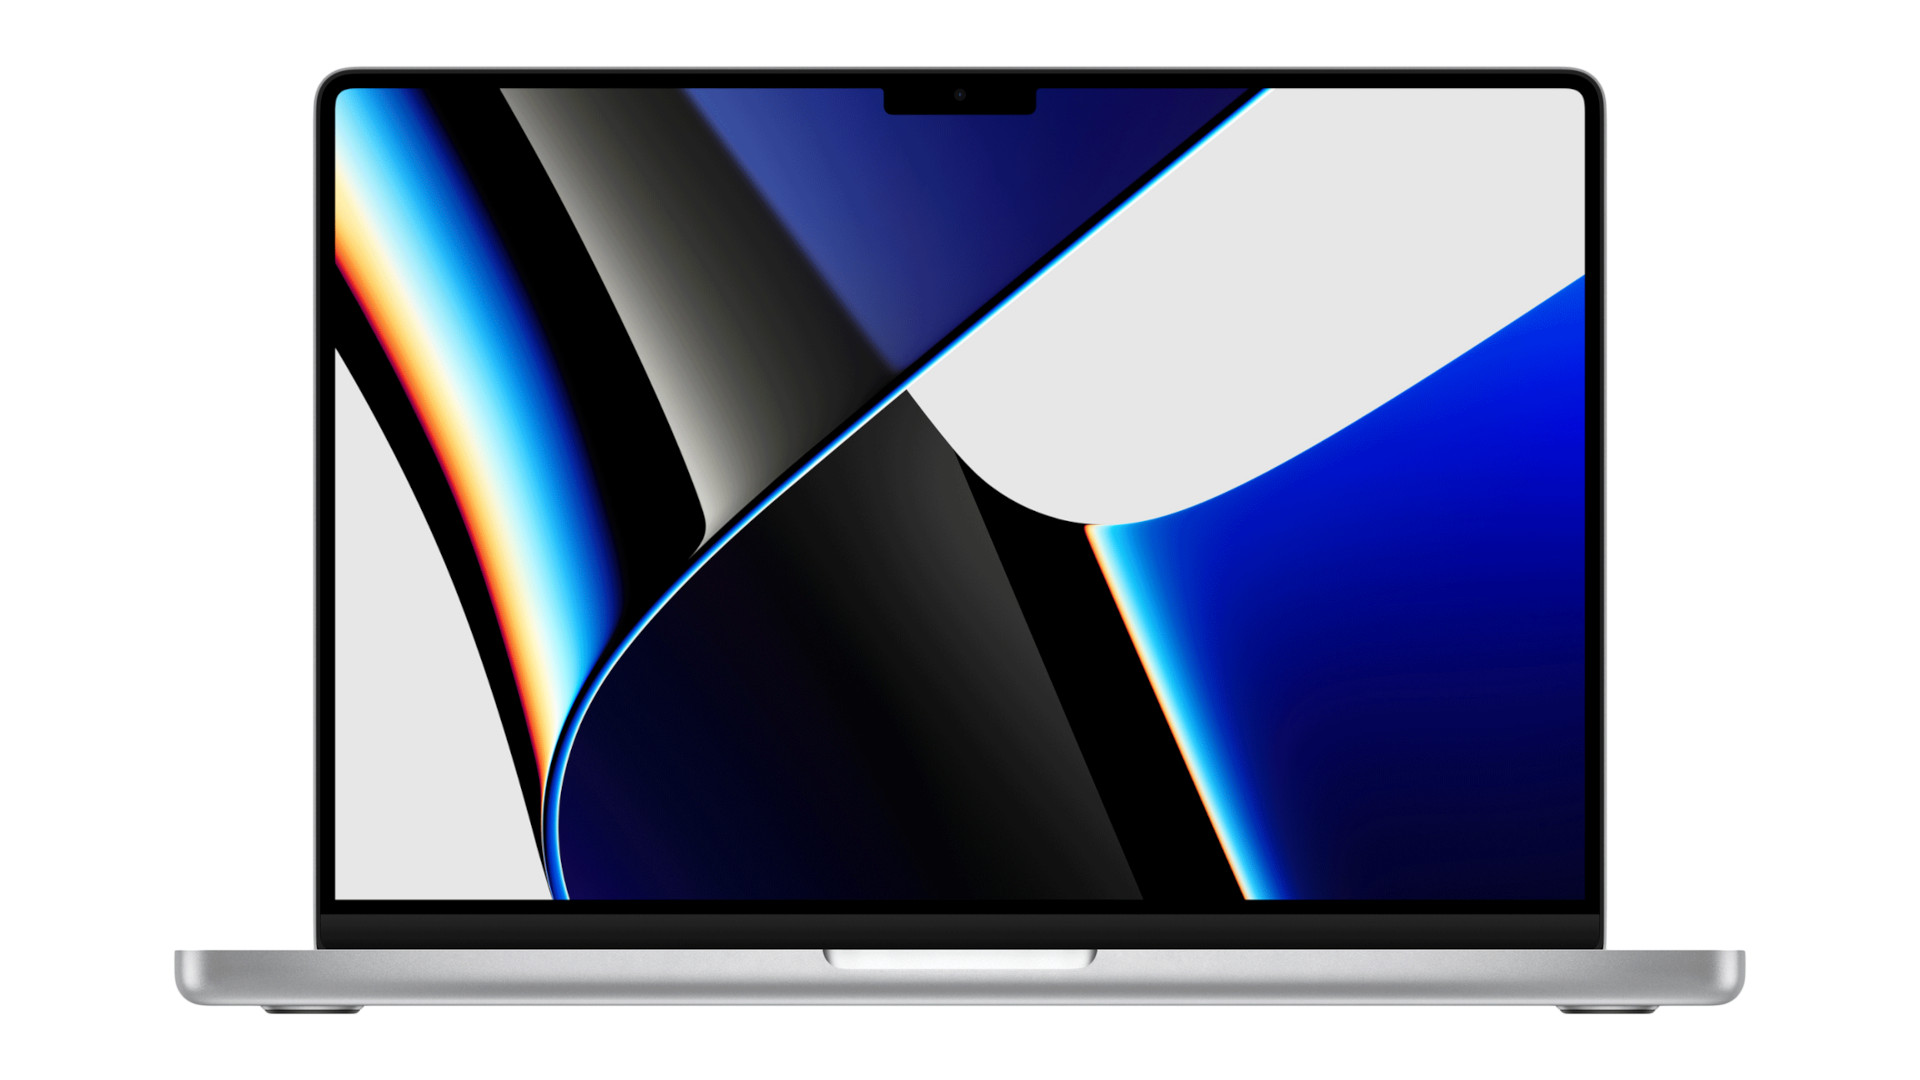 흰색 배경의 14형 MacBook Pro(2021), 추상적인 파란색 데스크탑 배경이 표시됨